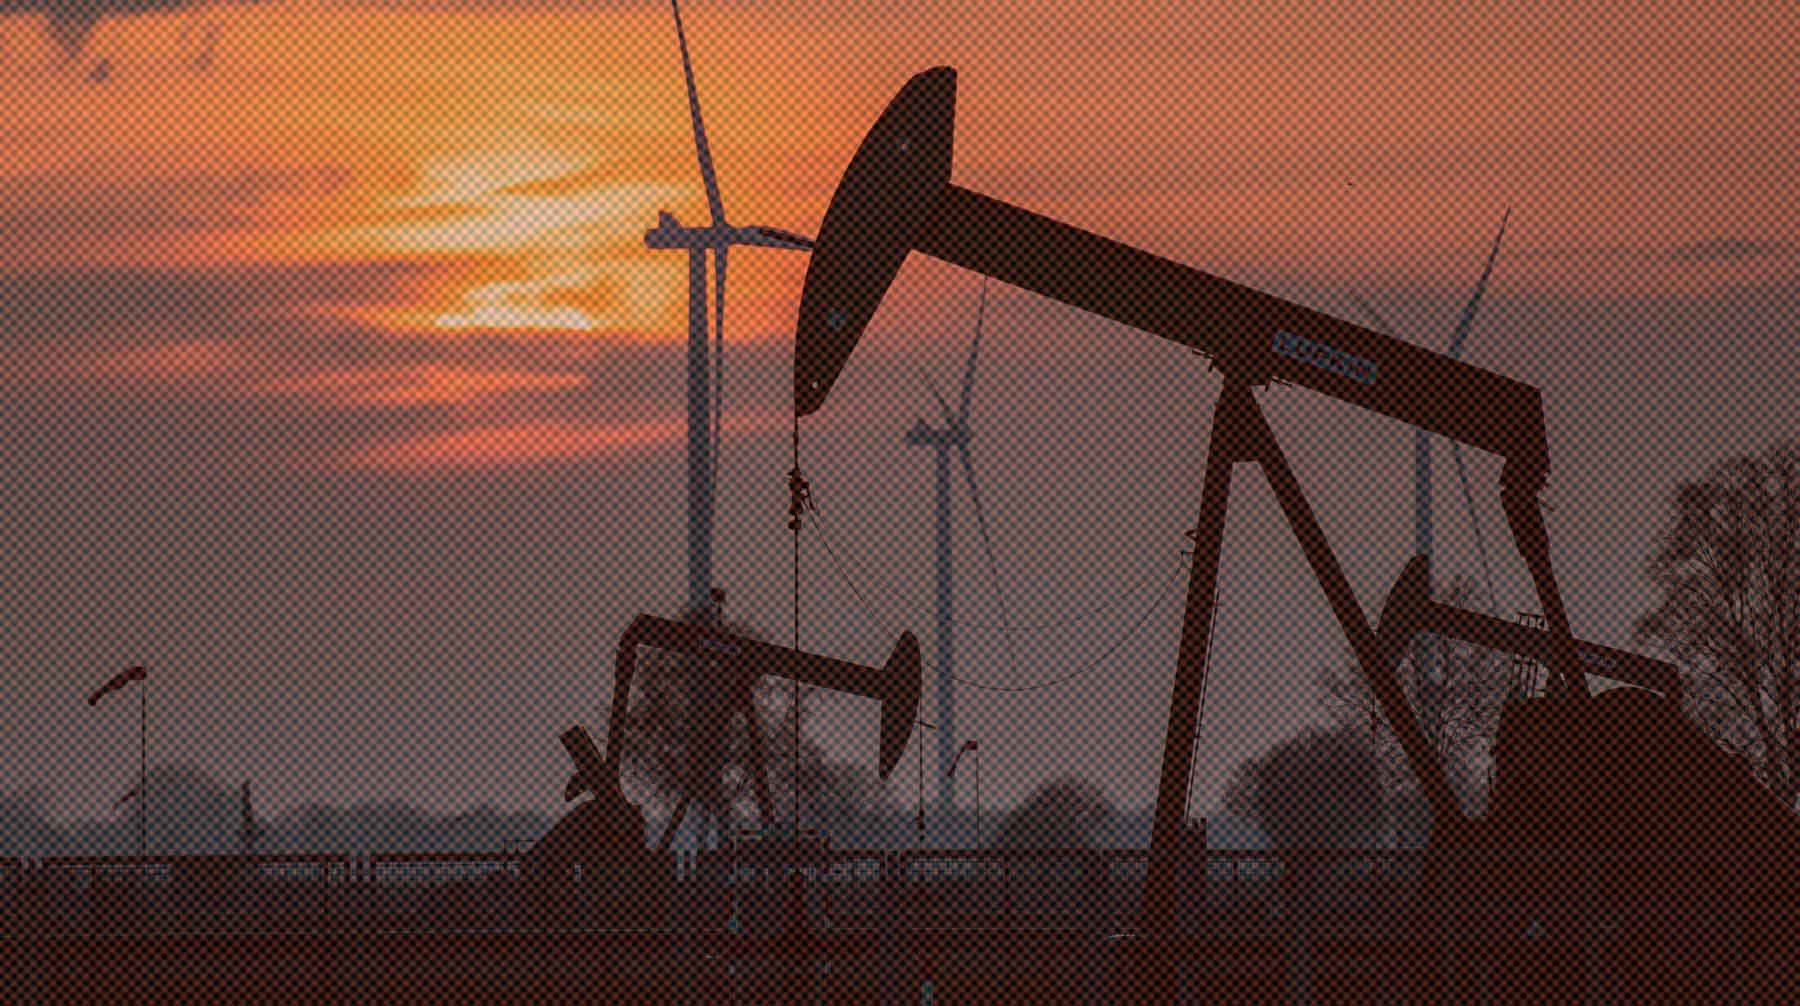 Dailystorm - Экспорт нефти из России вырос на 7% в 2022 году, несмотря на западные санкции